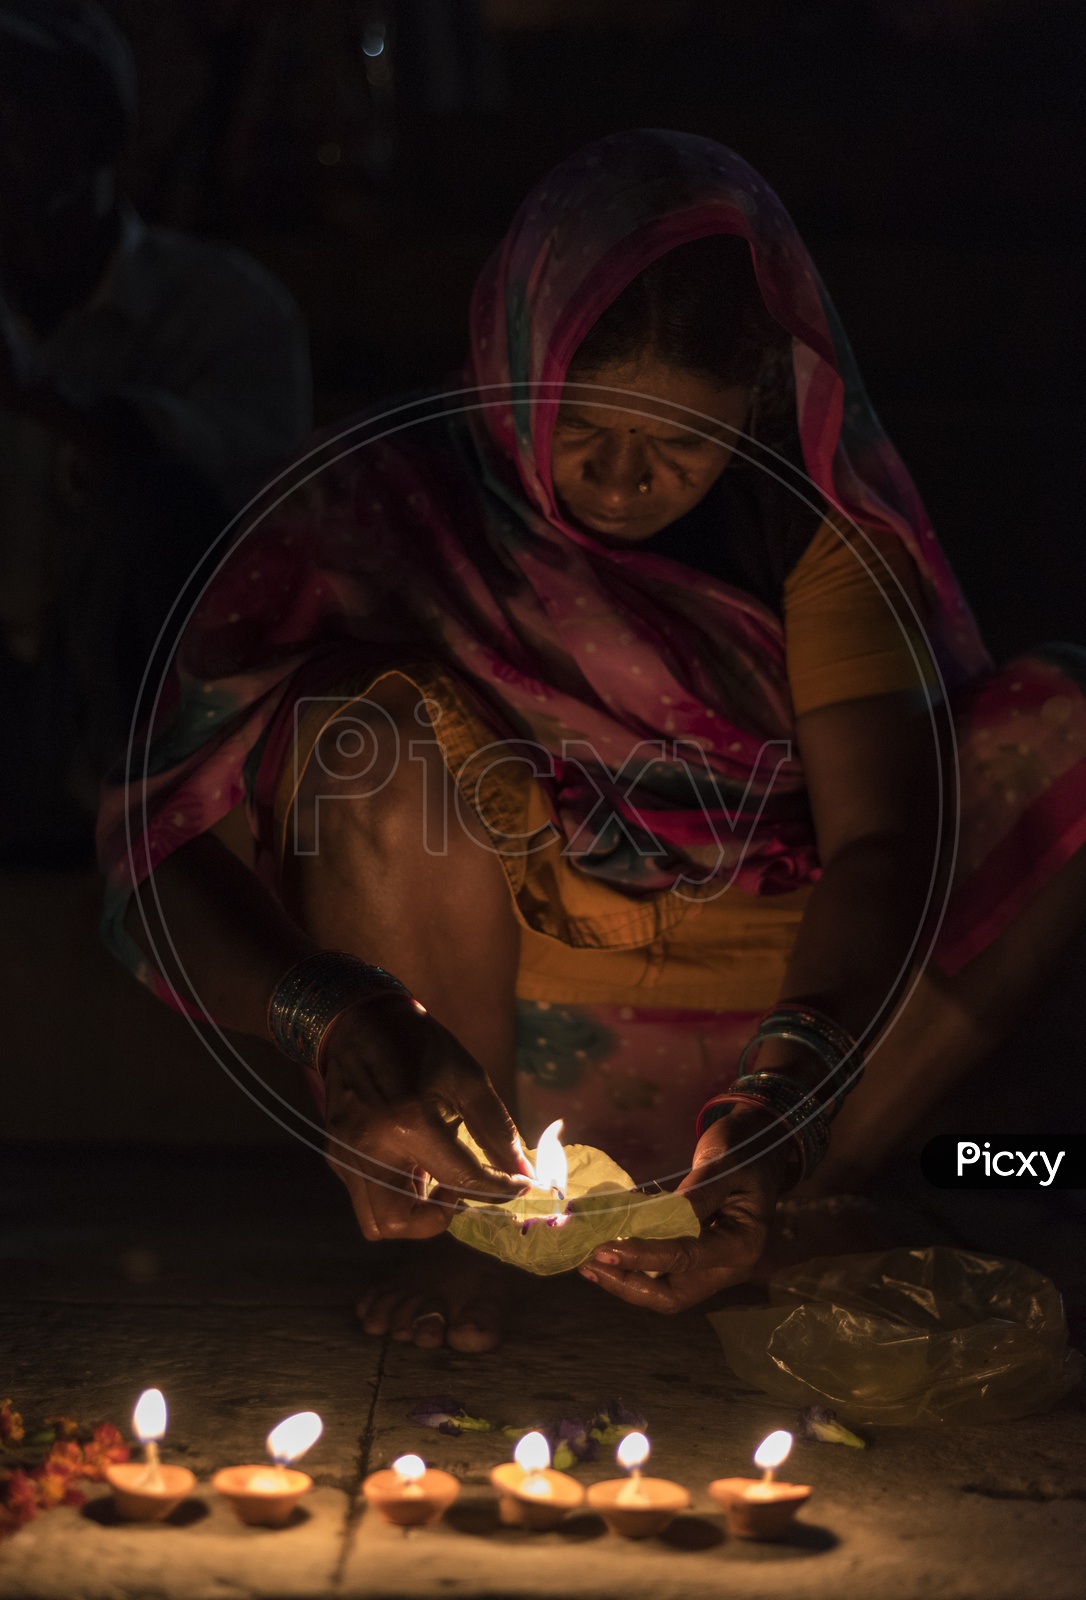 A Woman Lighting Dias in River banks of varanasi